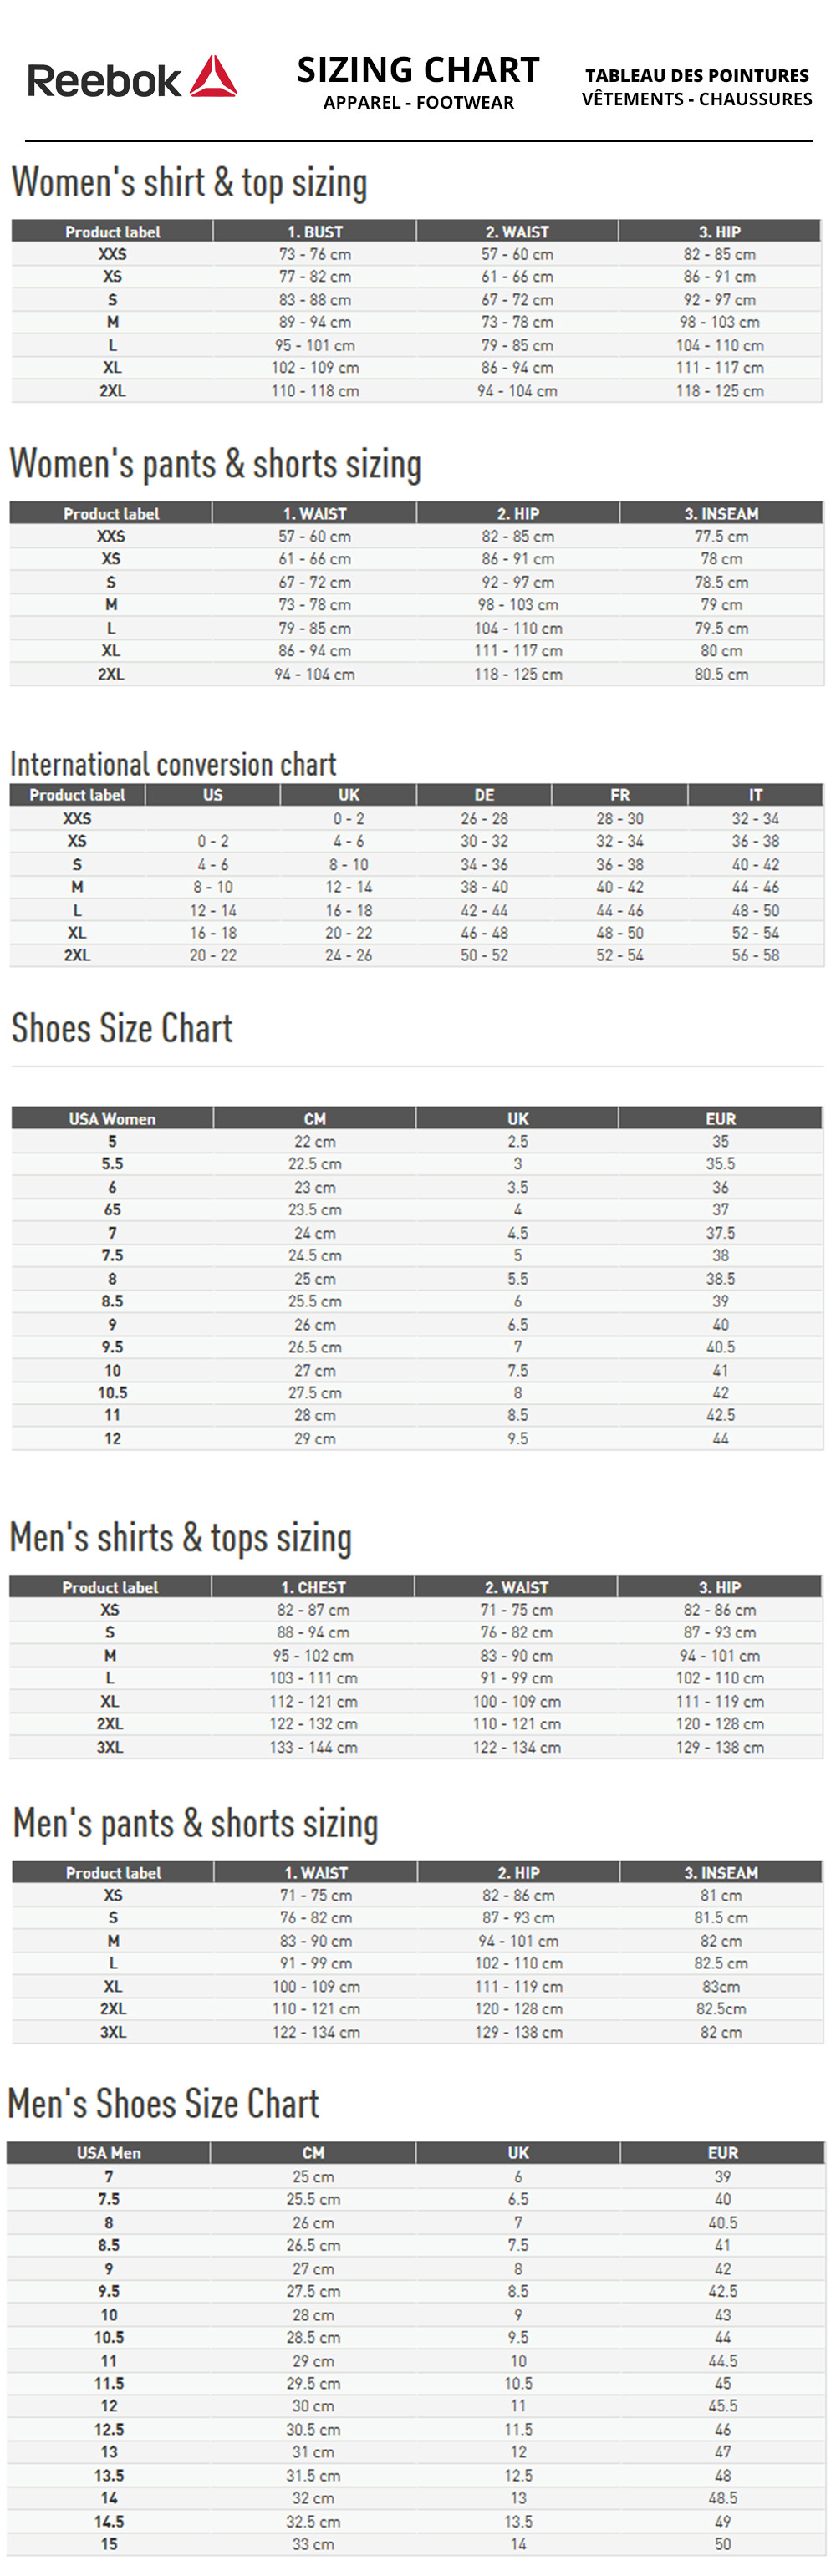 reebok shoe size chart compared to puma